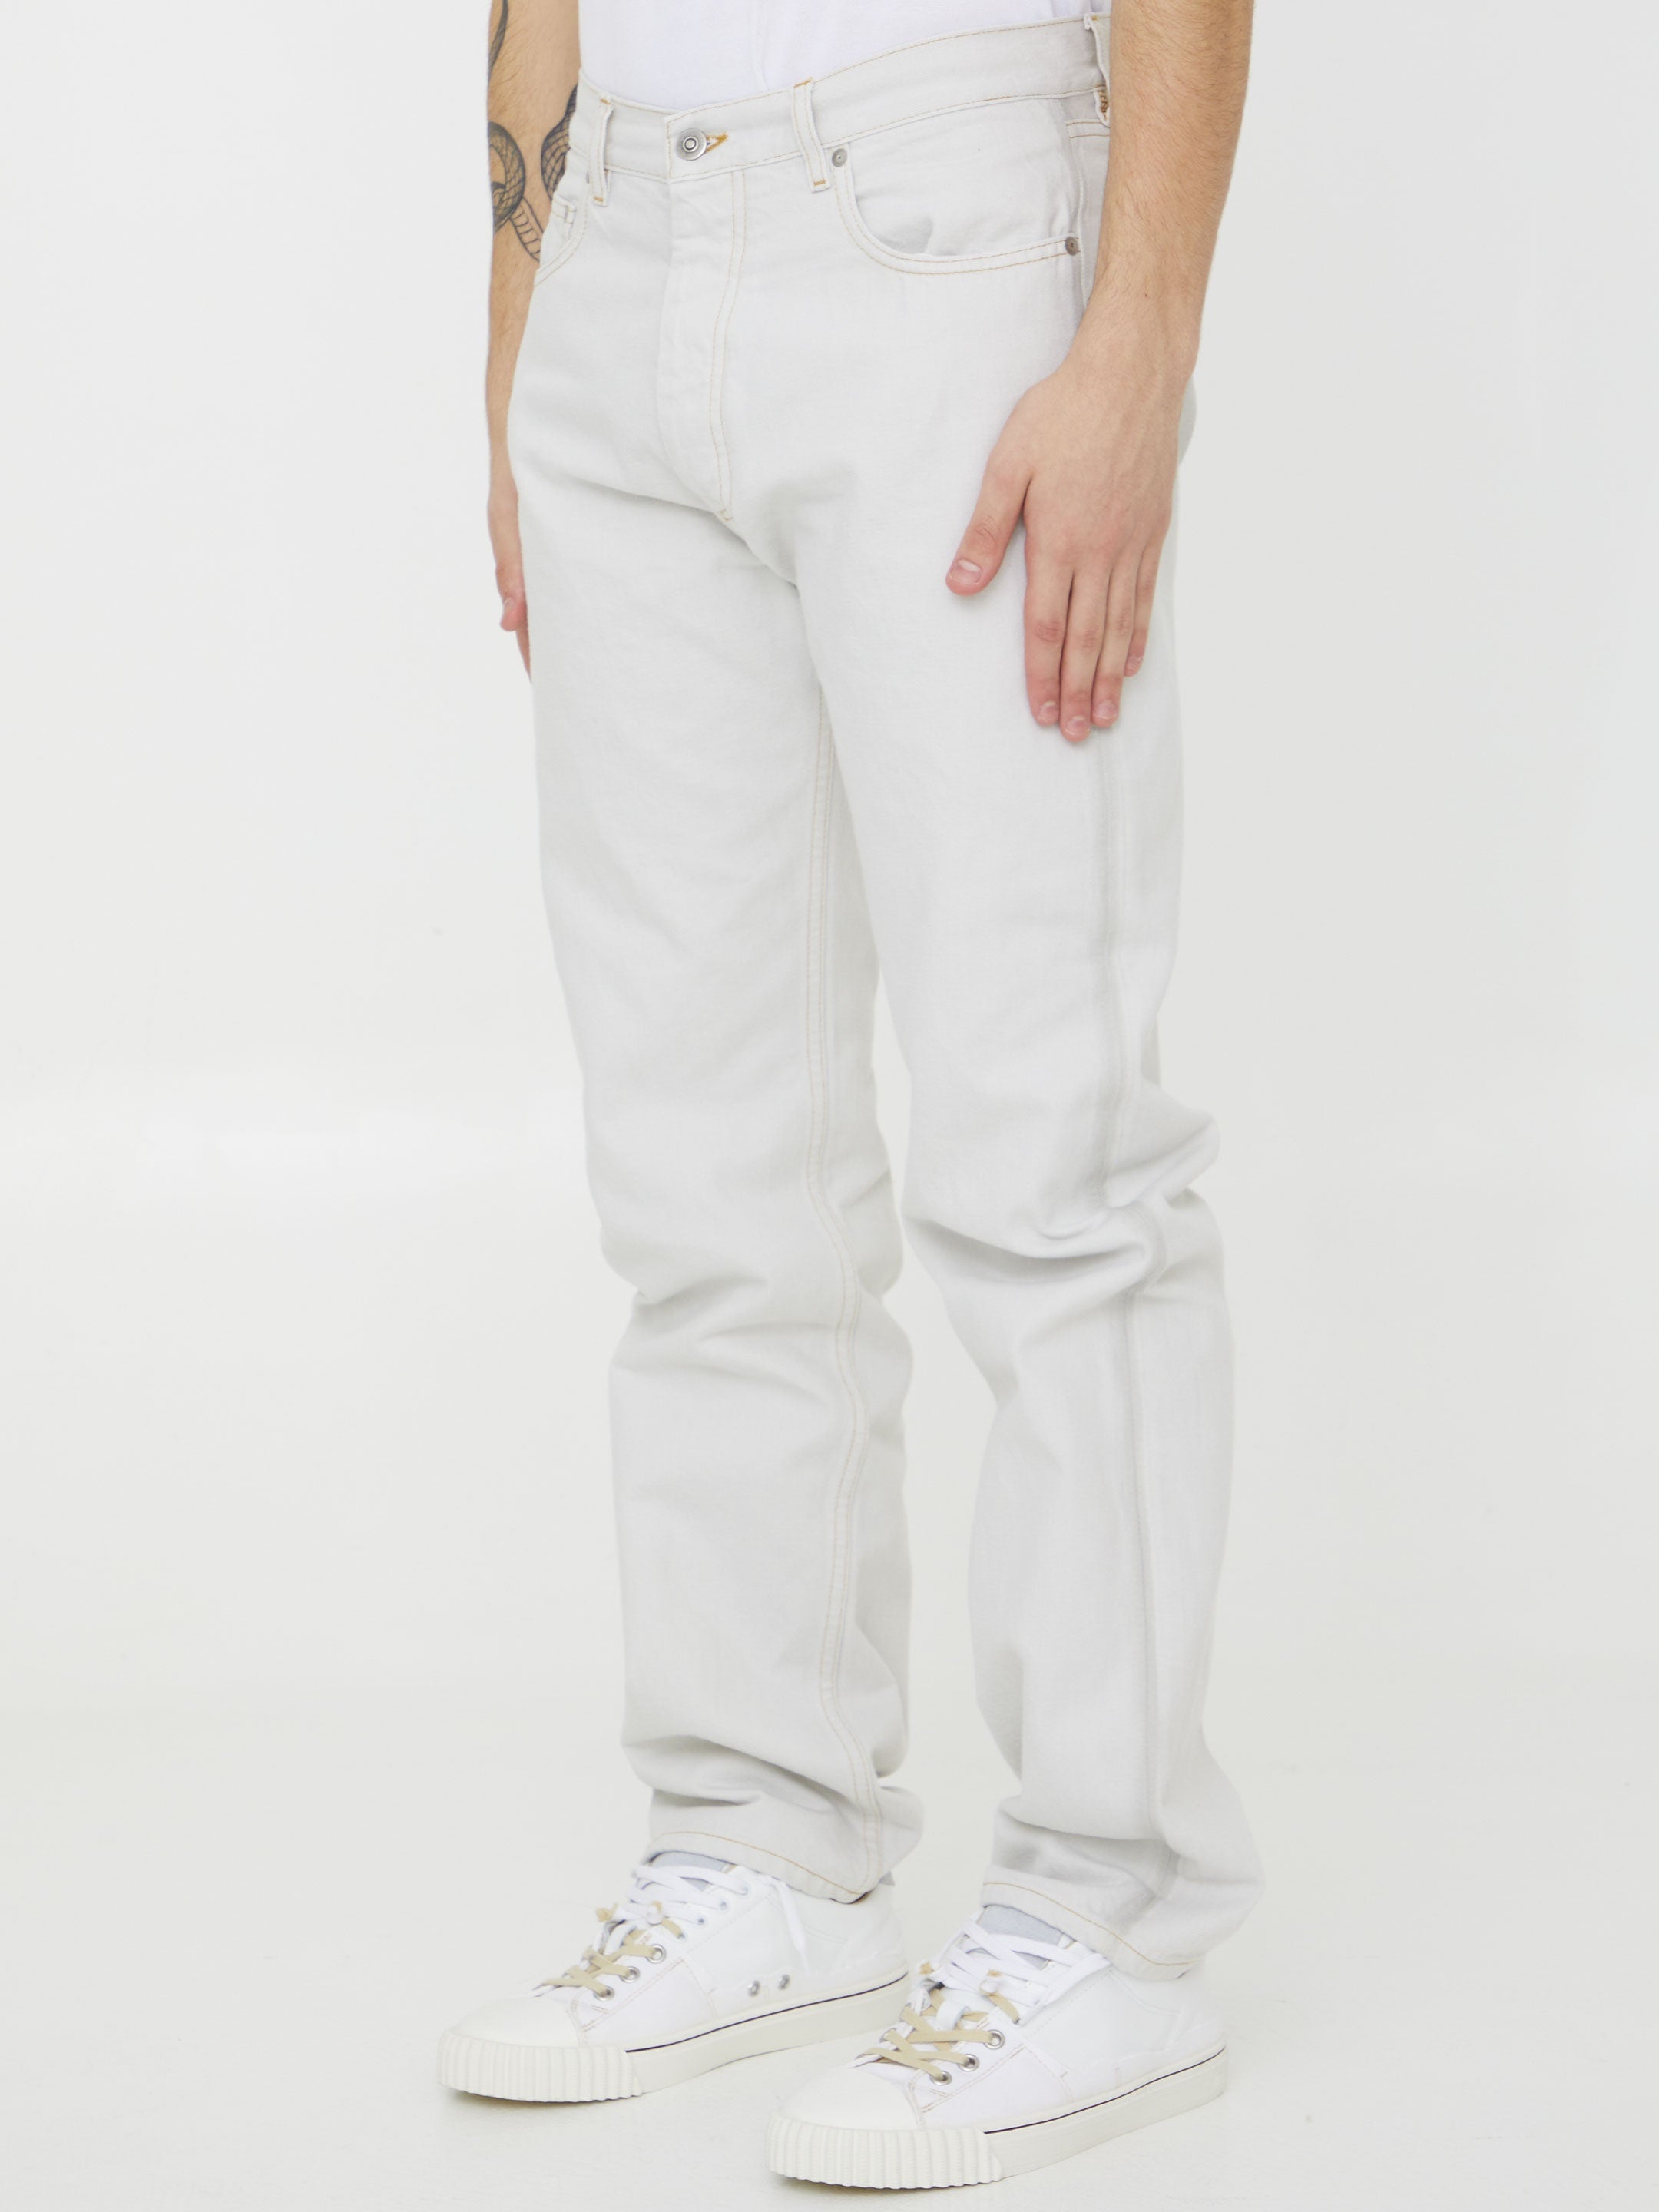 MAISON-MARGIELA-OUTLET-SALE-Cotton-denim-jeans-Jeans-34-WHITE-ARCHIVE-COLLECTION-2.jpg